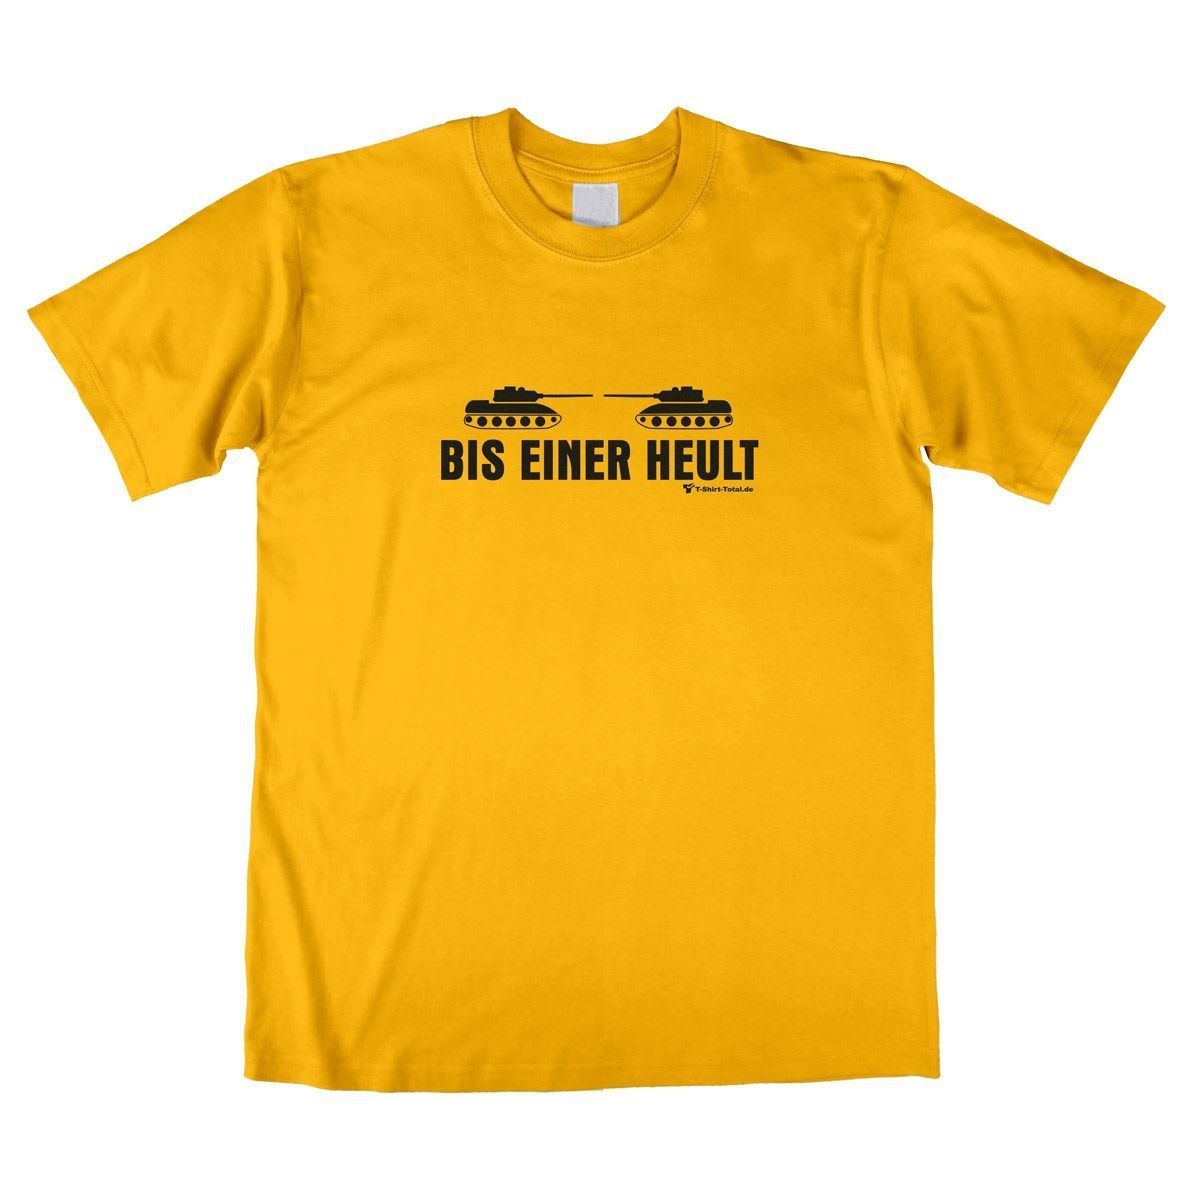 Bis einer heult Unisex T-Shirt gelb Small